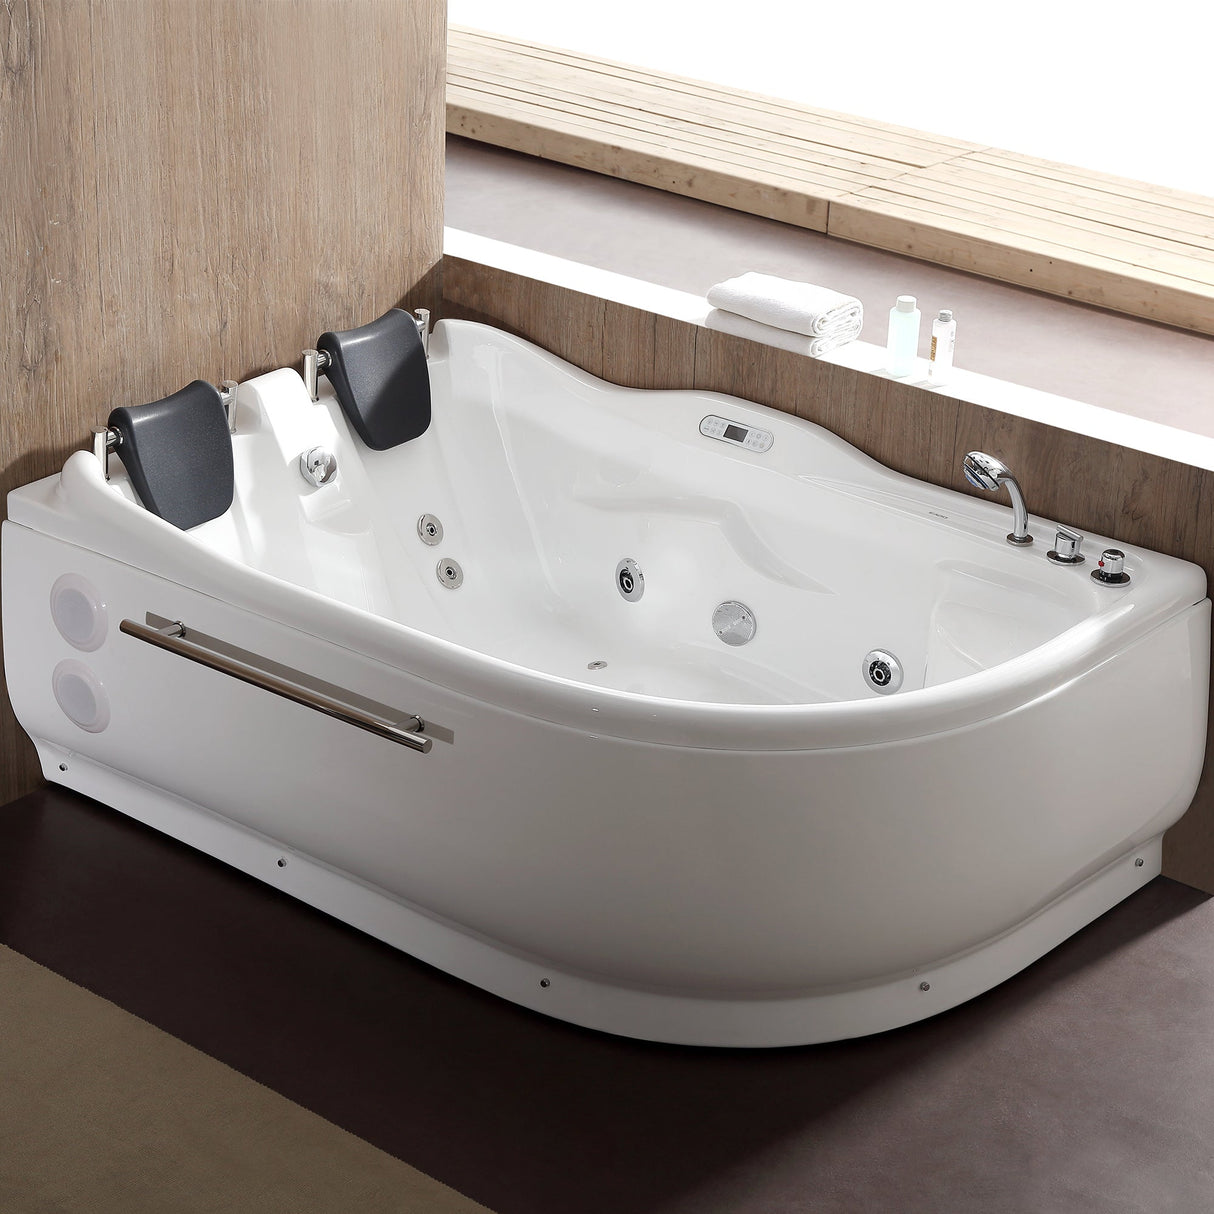 EAGO | AM124ETL-R 6 ft Left Drain Corner Acrylic White Whirlpool Bathtub for Two